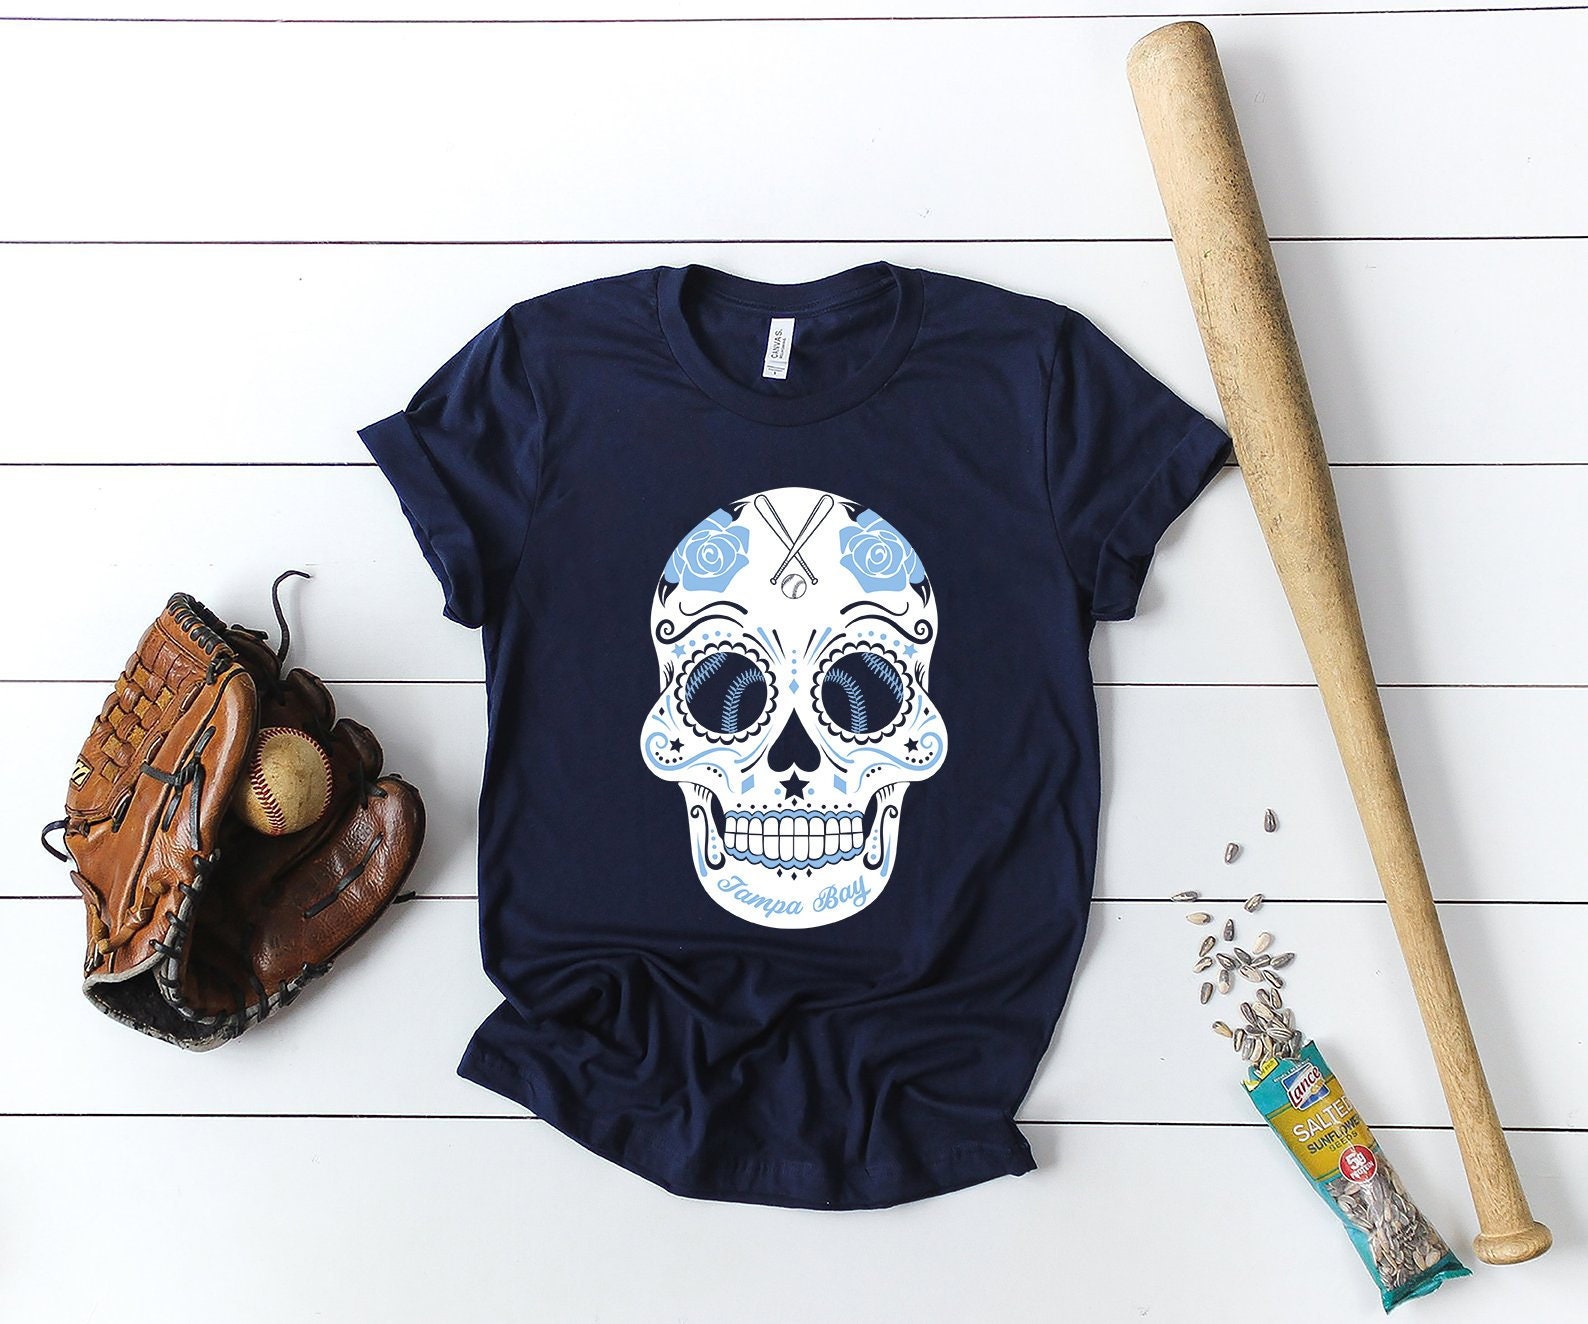 baseball skeleton shirt